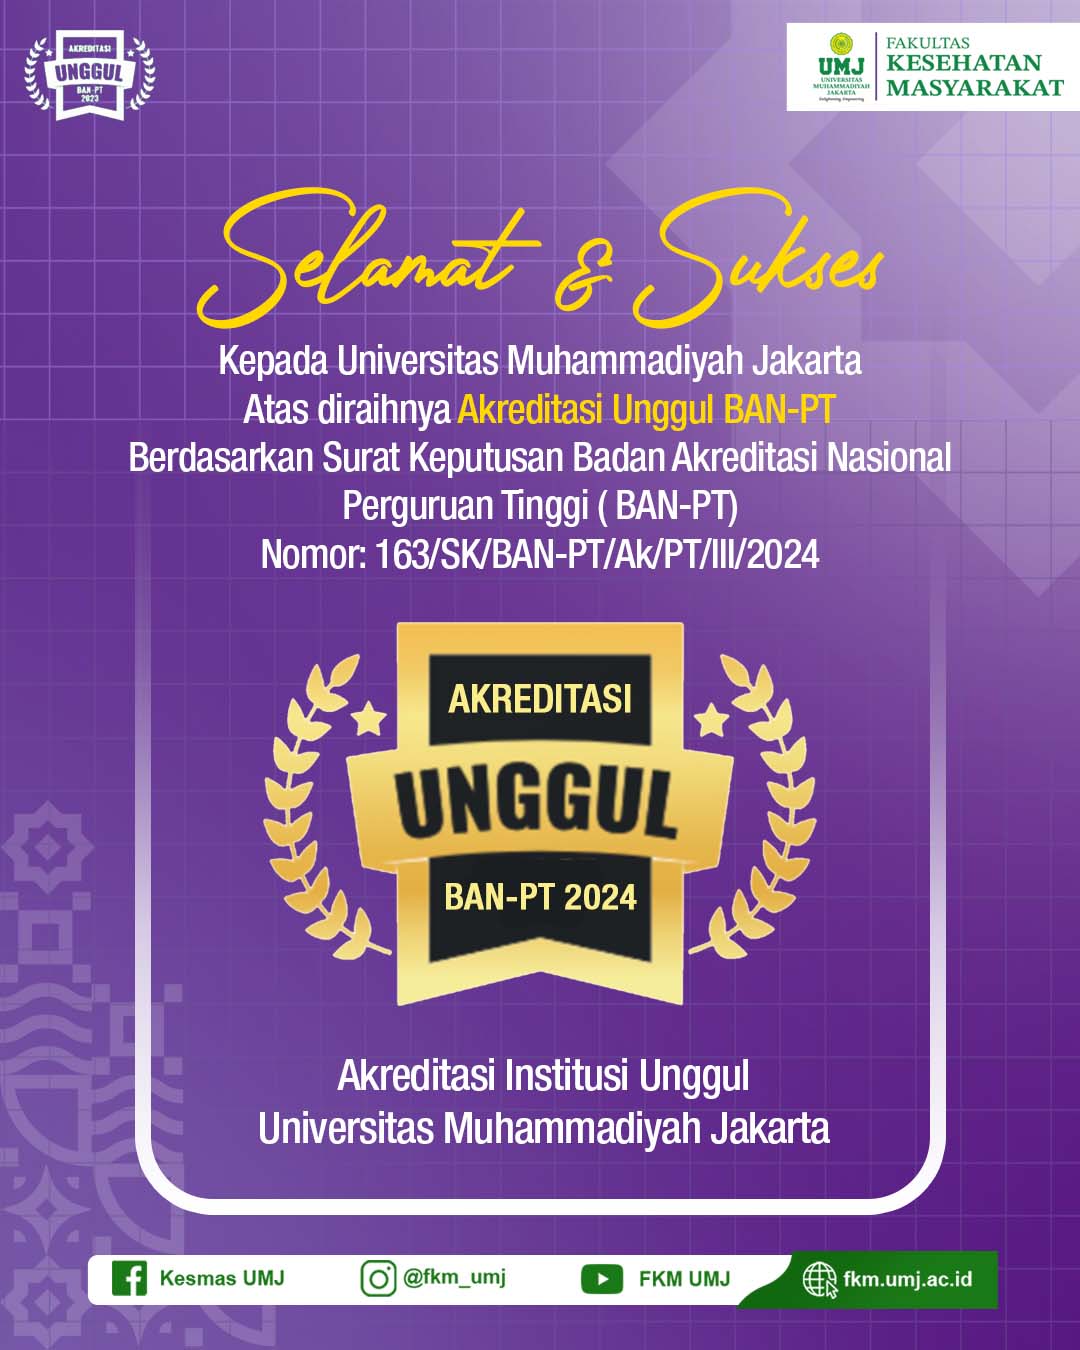 Selamat dan Sukses Kepada Universitas Muhammadiyah Jakarta atas diraihnya Akreditasi UNGGUL BAN-PT Berdasarkan Surat Keputusan Badan Akreditasi Nasional Perguruan Tinggi (BAN-PT) Nomor: 163/SK/BAN-PT/Ak/PT/II/2024